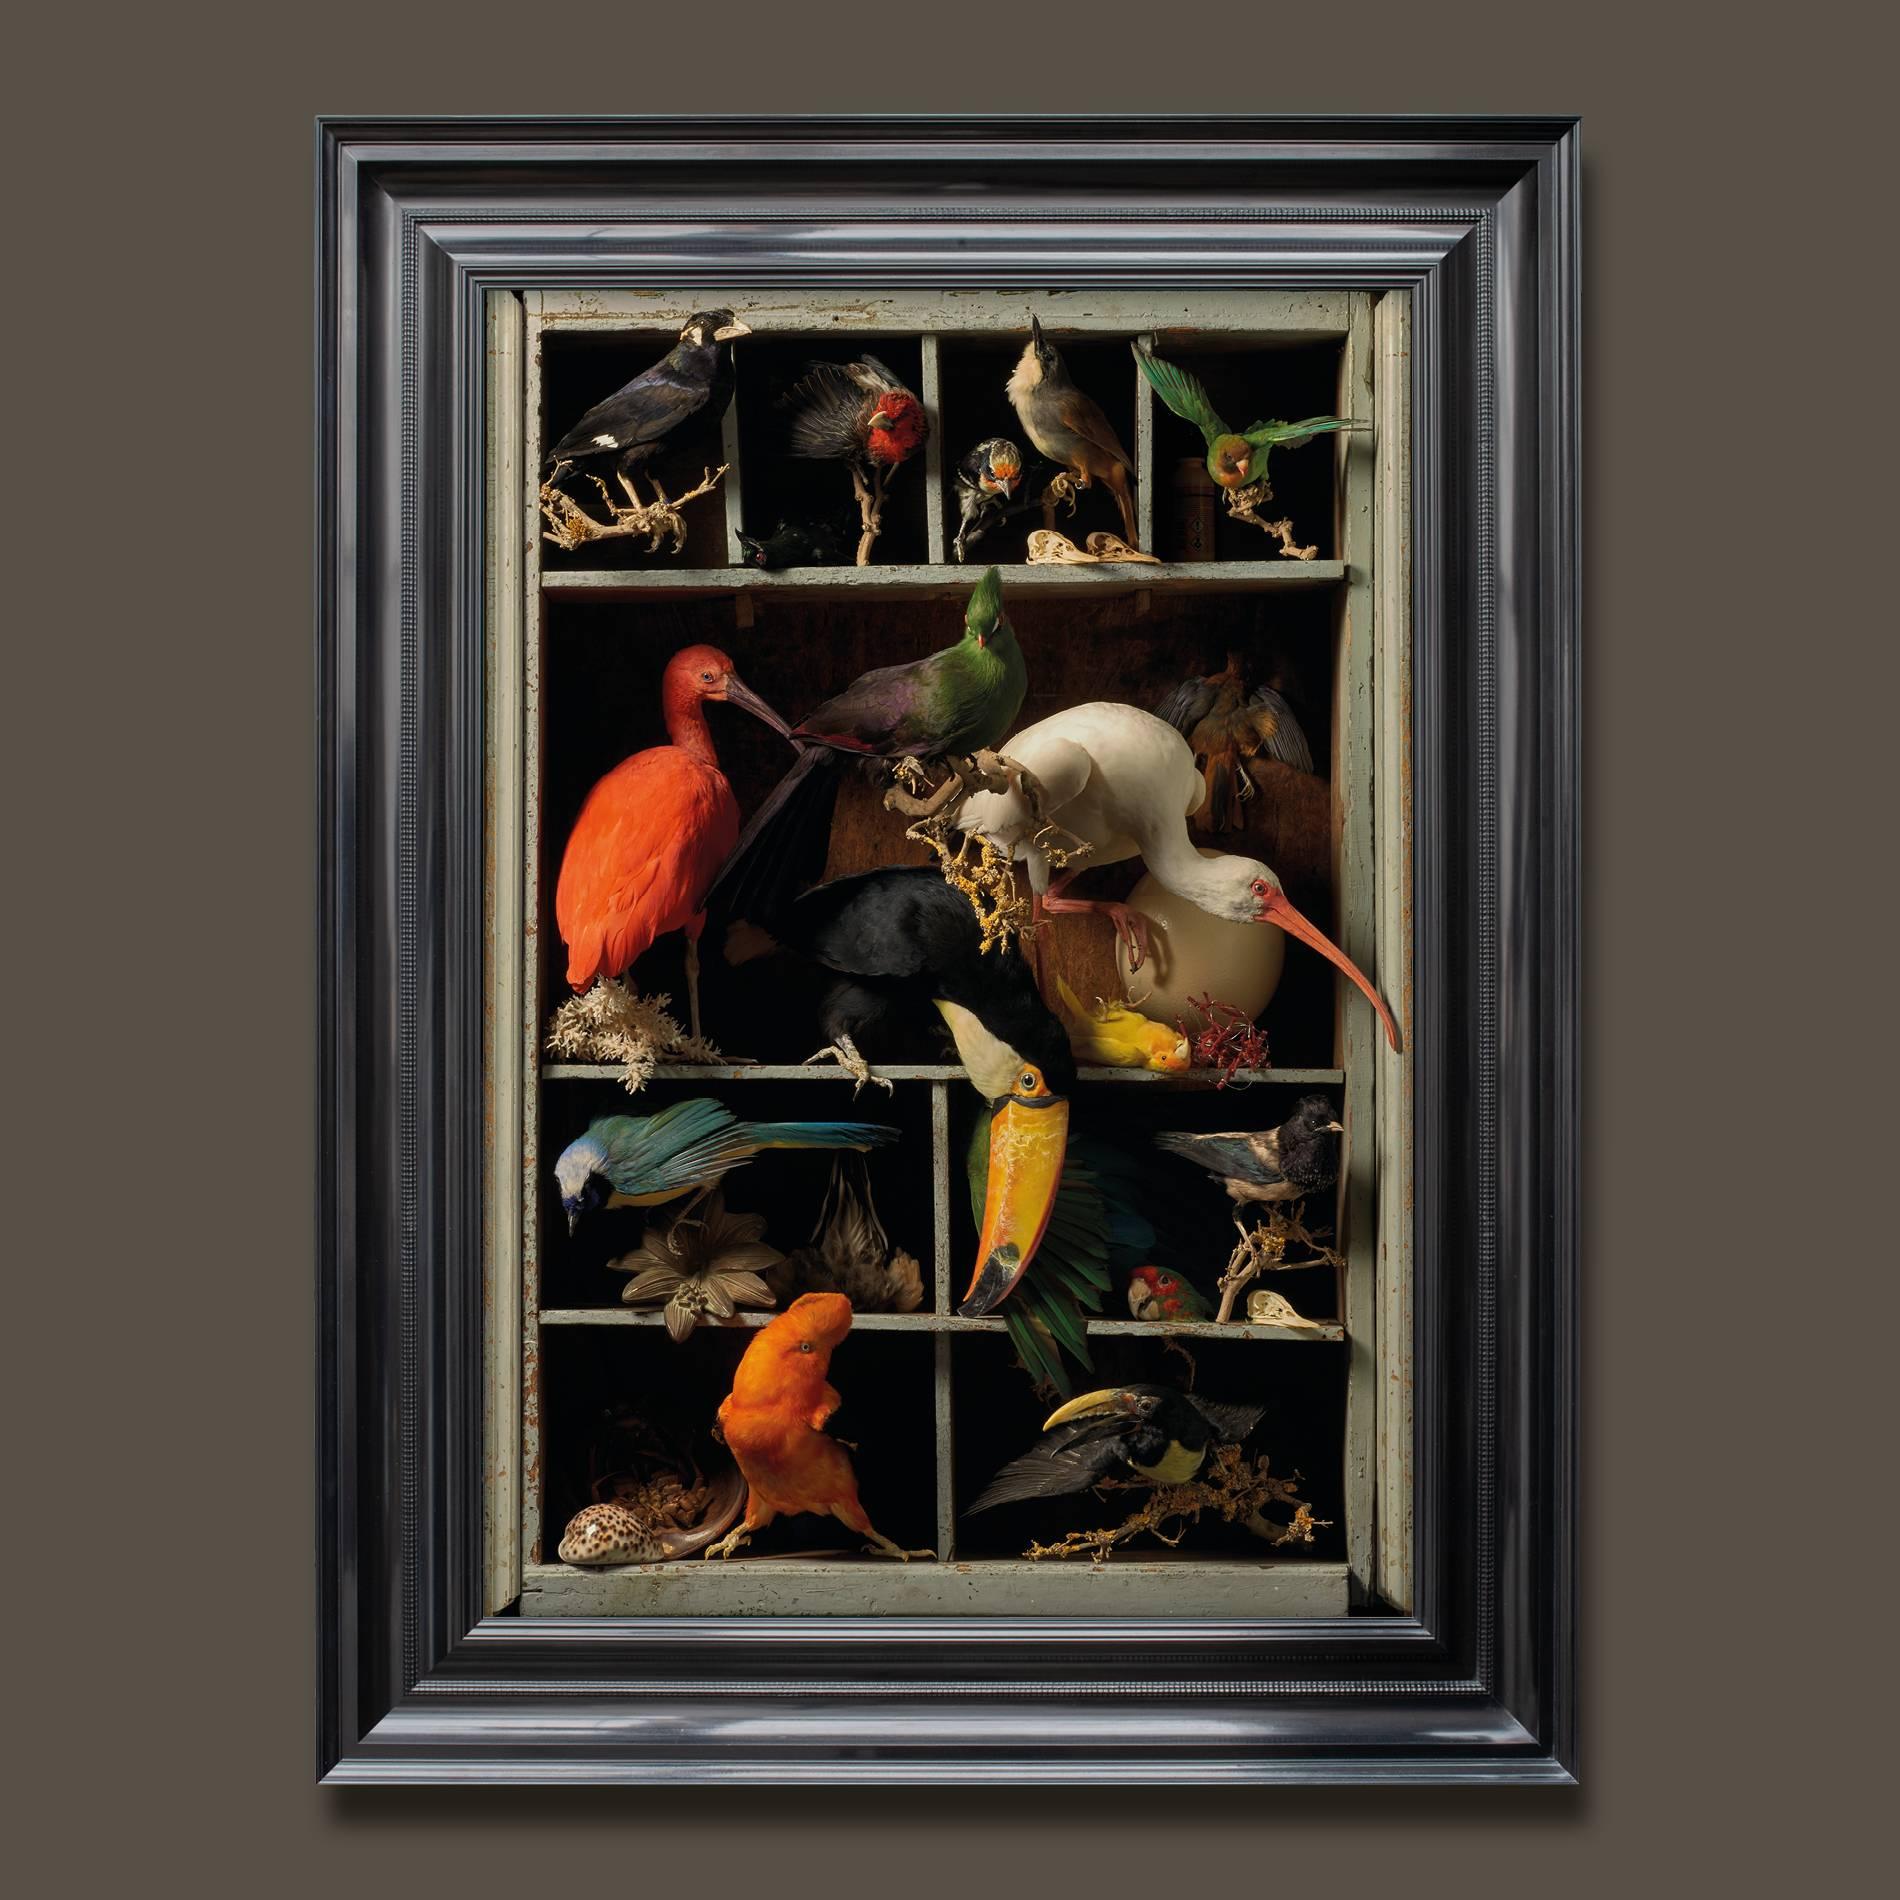 Die dritte Serie von Fotografien der Tierpräparatoren Sinke & Van Tongeren

Nachdem sie so viele Gemälde des 17. Jahrhunderts betrachtet und analysiert hatten, wurden sie zu einer neuen Serie inspiriert, die sich auf Meisterwerke des Stilllebens